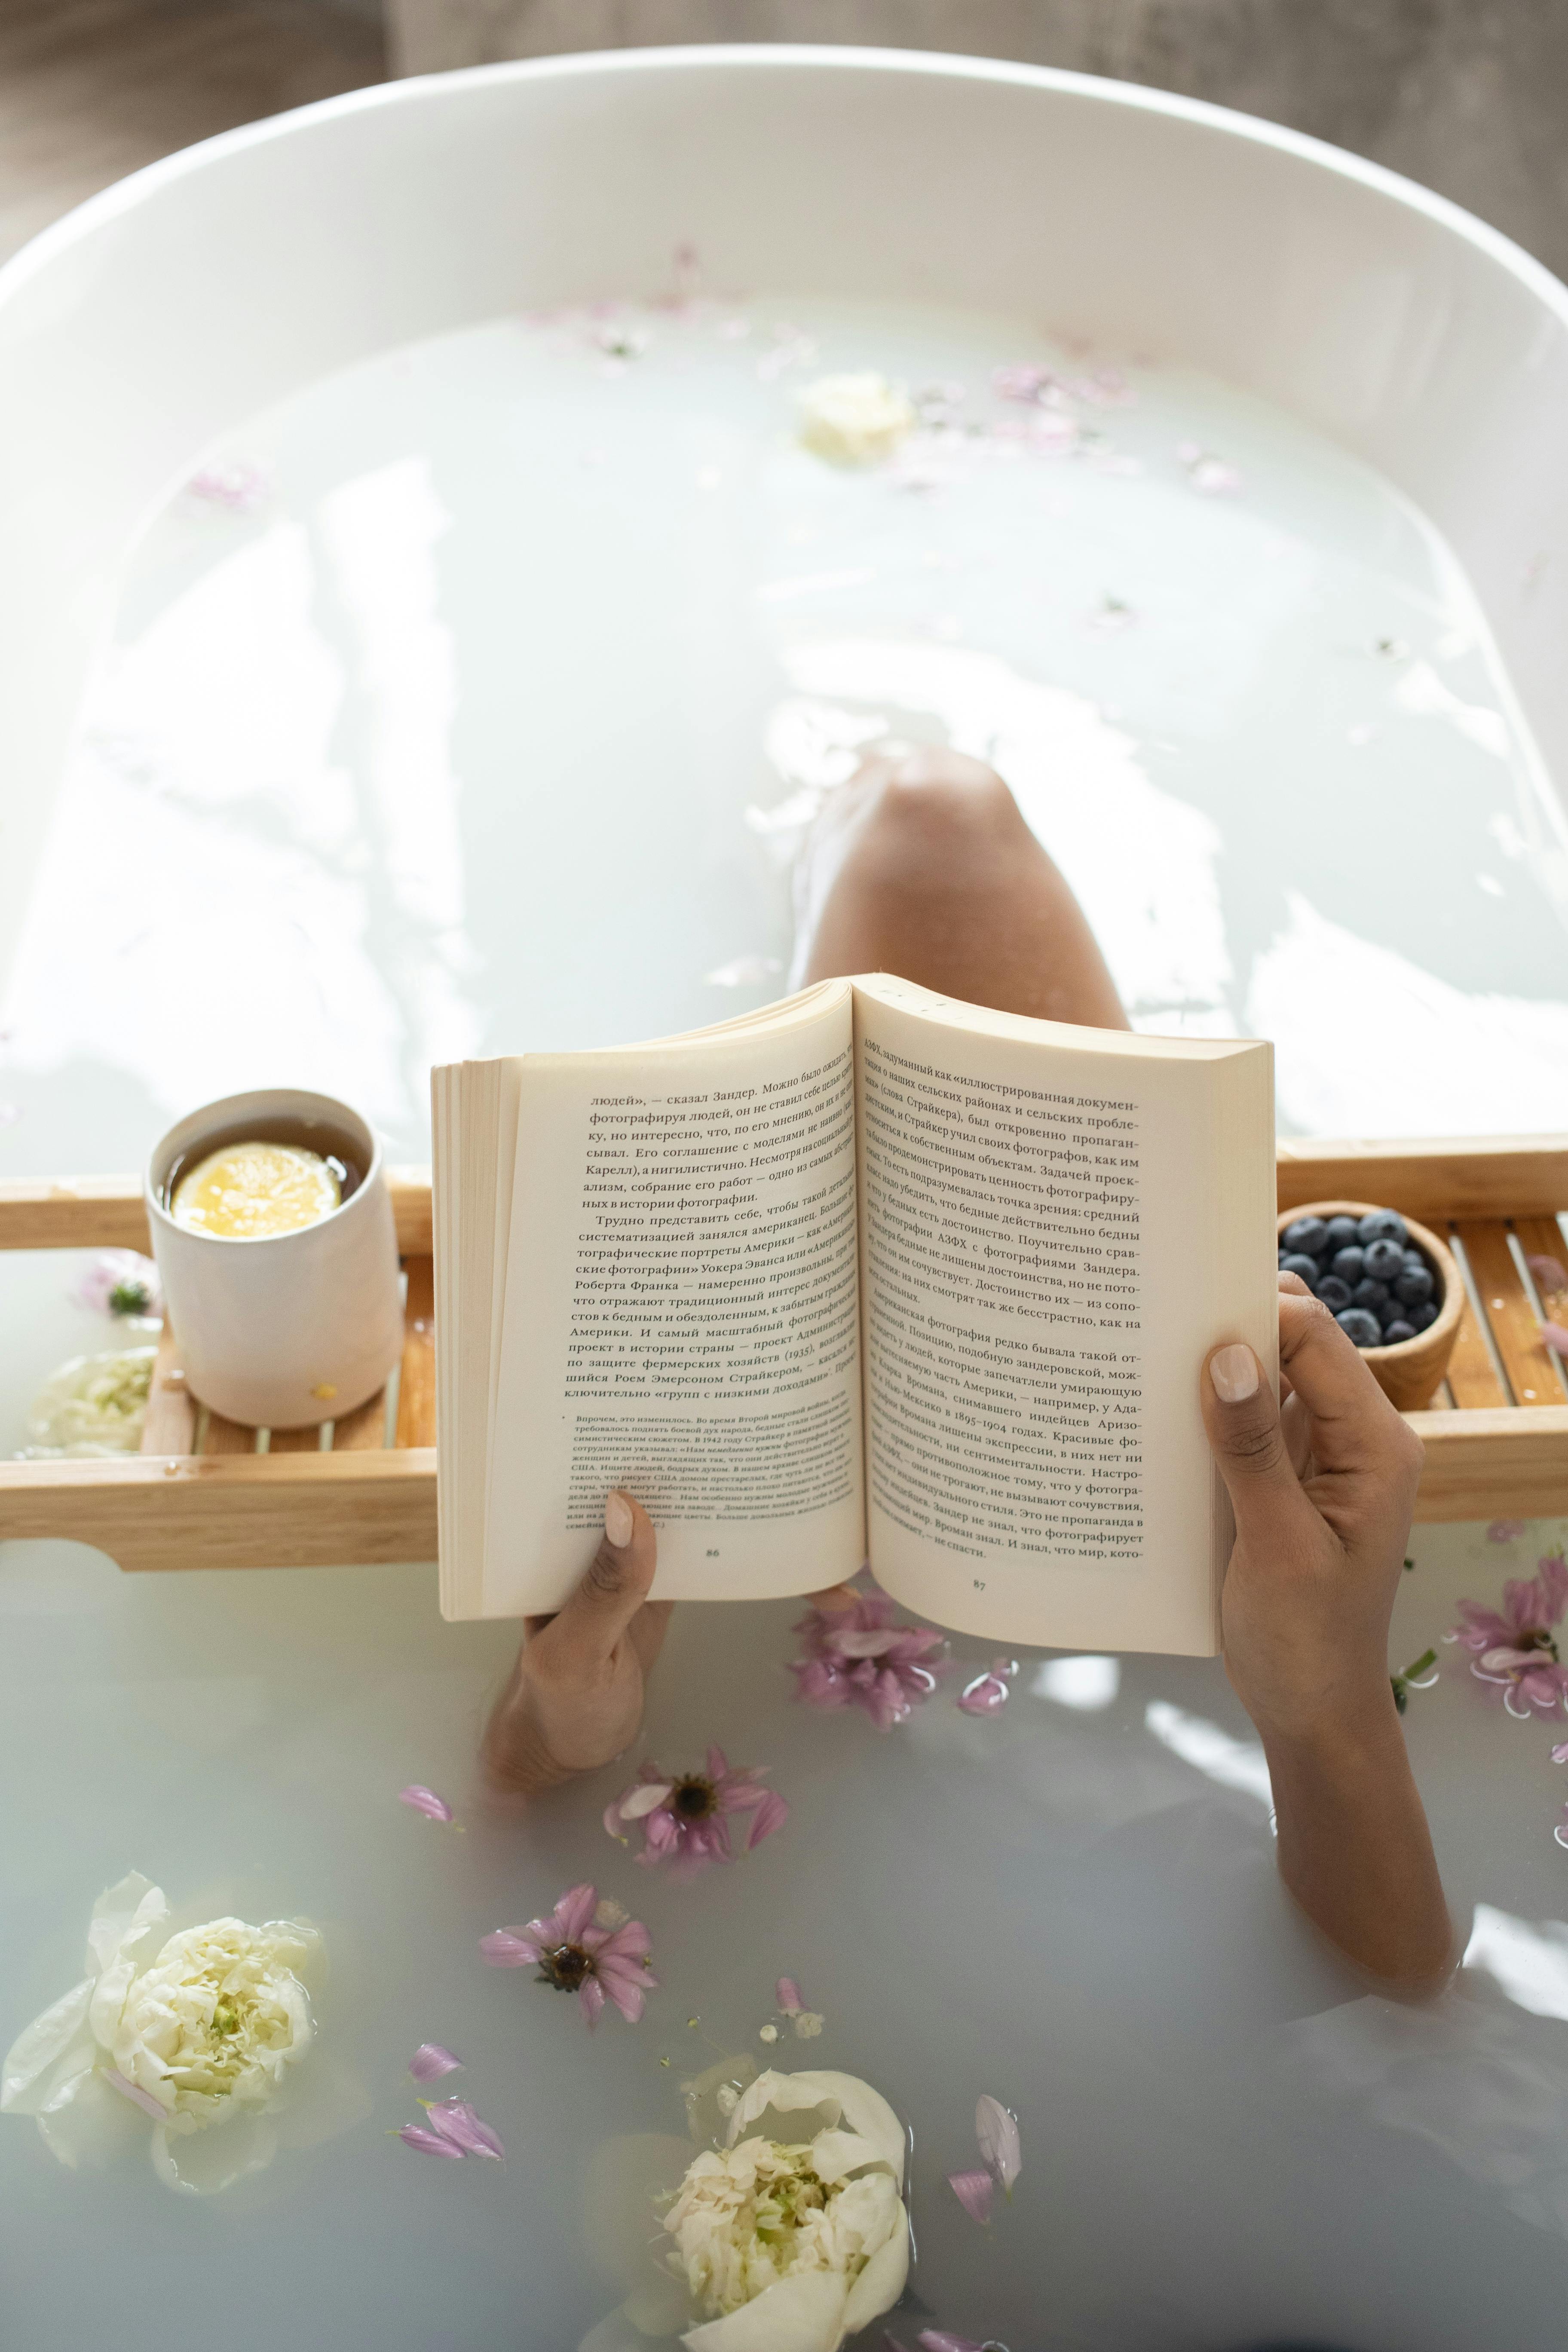 Una mujer leyendo un libro en una bañera durante un tratamiento de spa | Fuente: Pexels